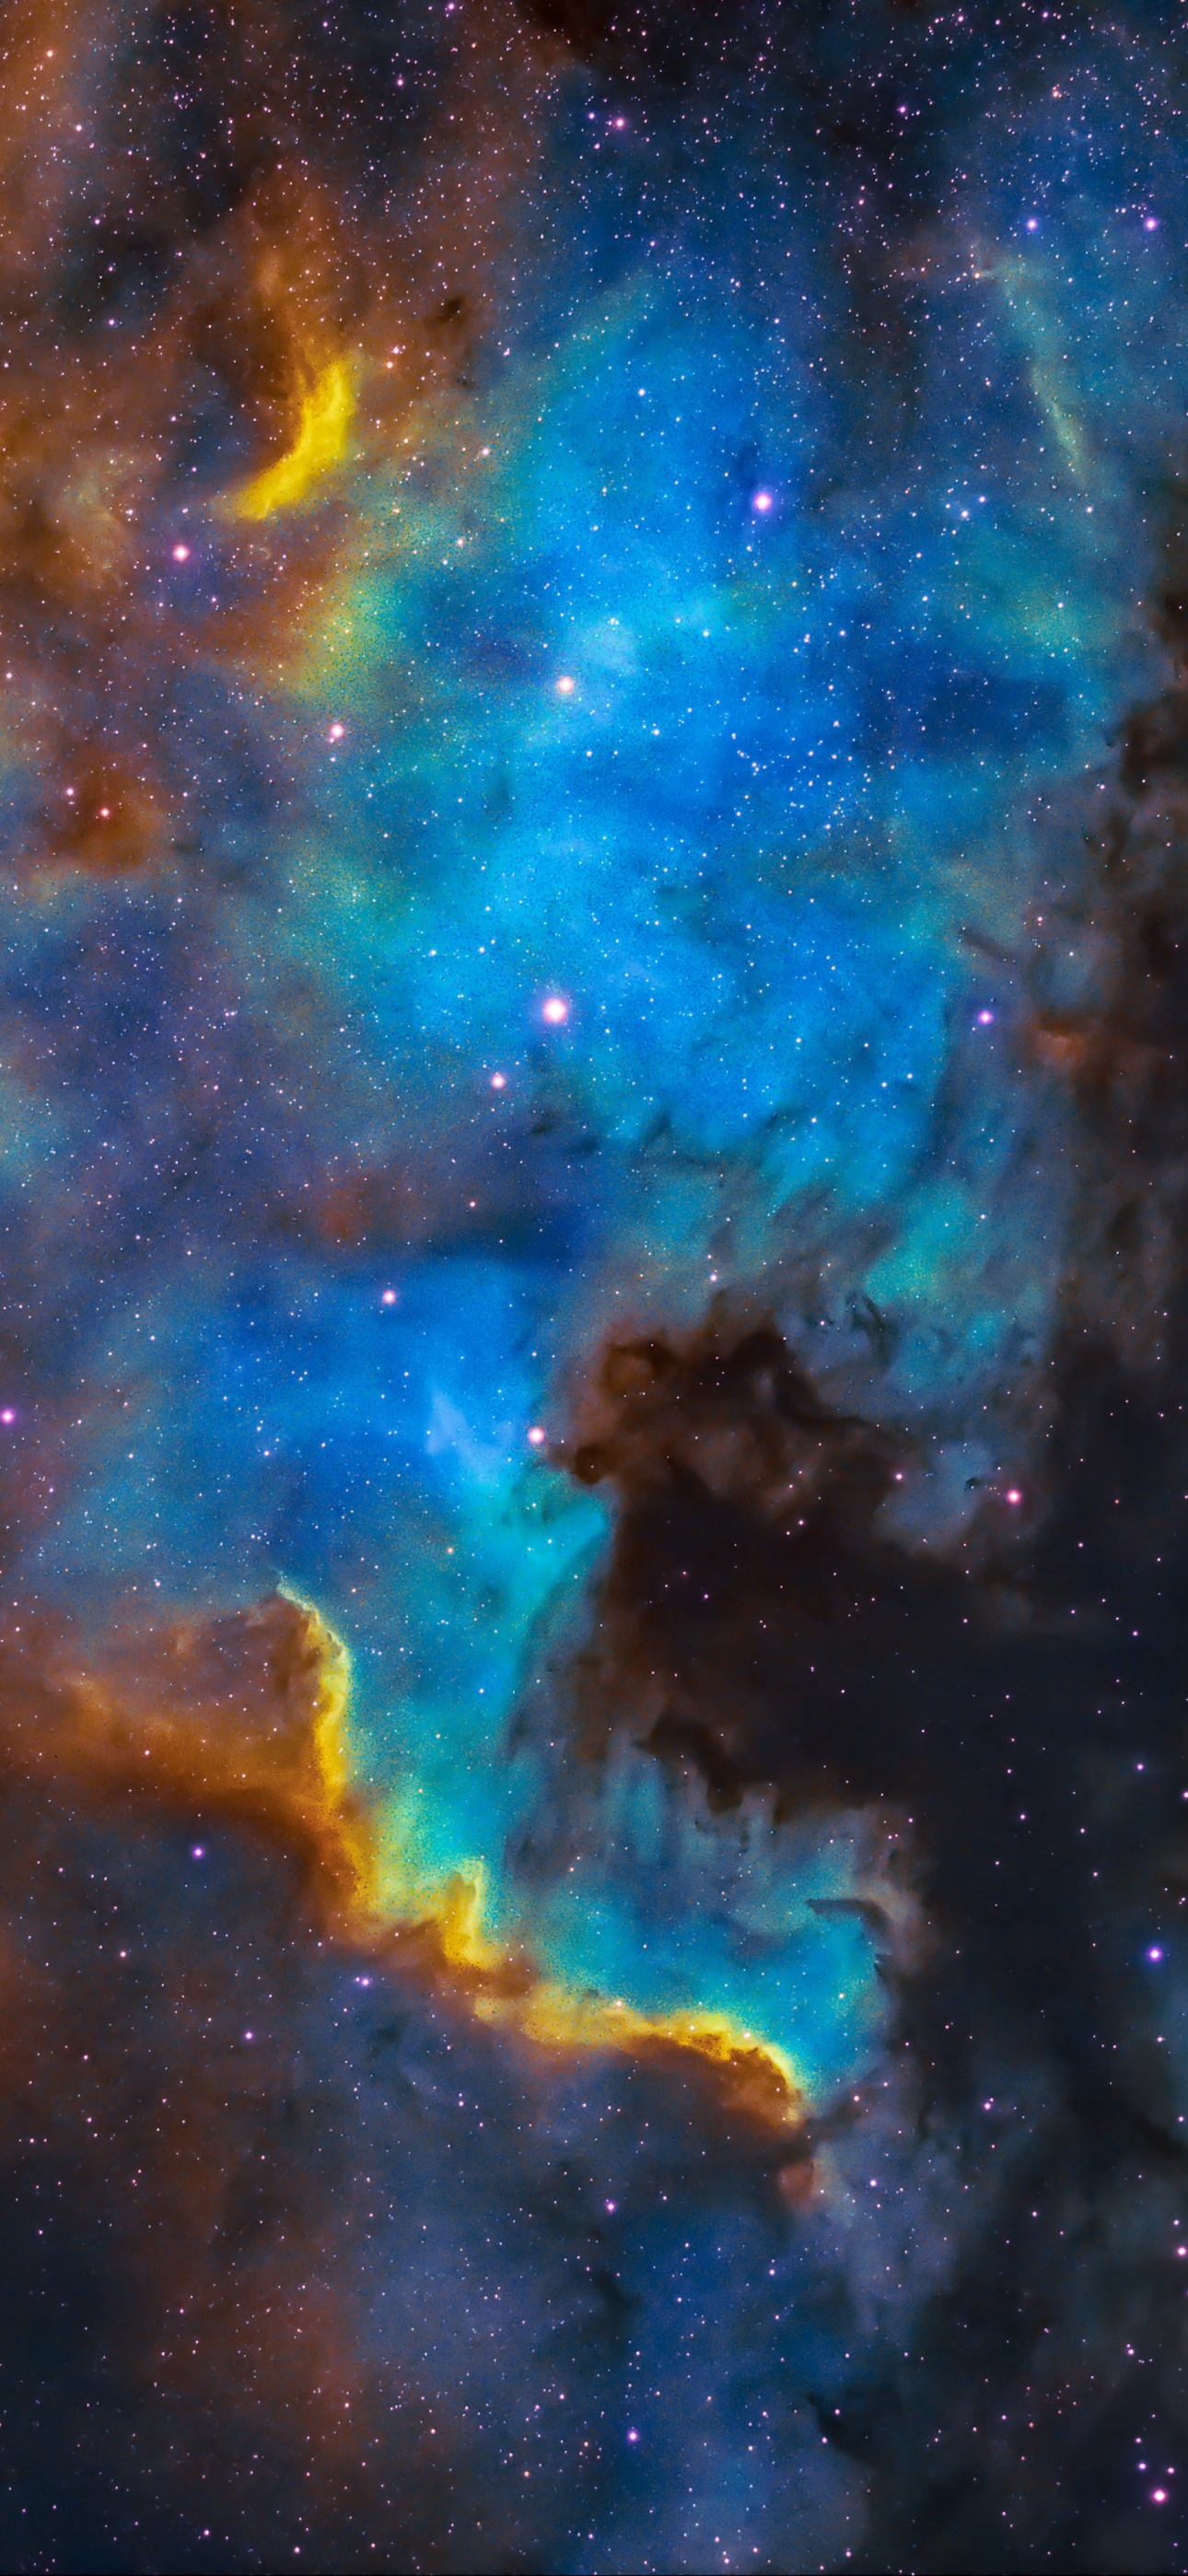 Hãy cùng nhìn vào bức hình này để khám phá sự kỳ diệu của Thiên Nga. Với màu sắc và hình dáng độc đáo, bạn sẽ bị cuốn hút bởi cảnh tượng của hành tinh này. Hãy thưởng thức tinh thần của Vũ trụ thông qua cảnh quan ngoạn mục này.